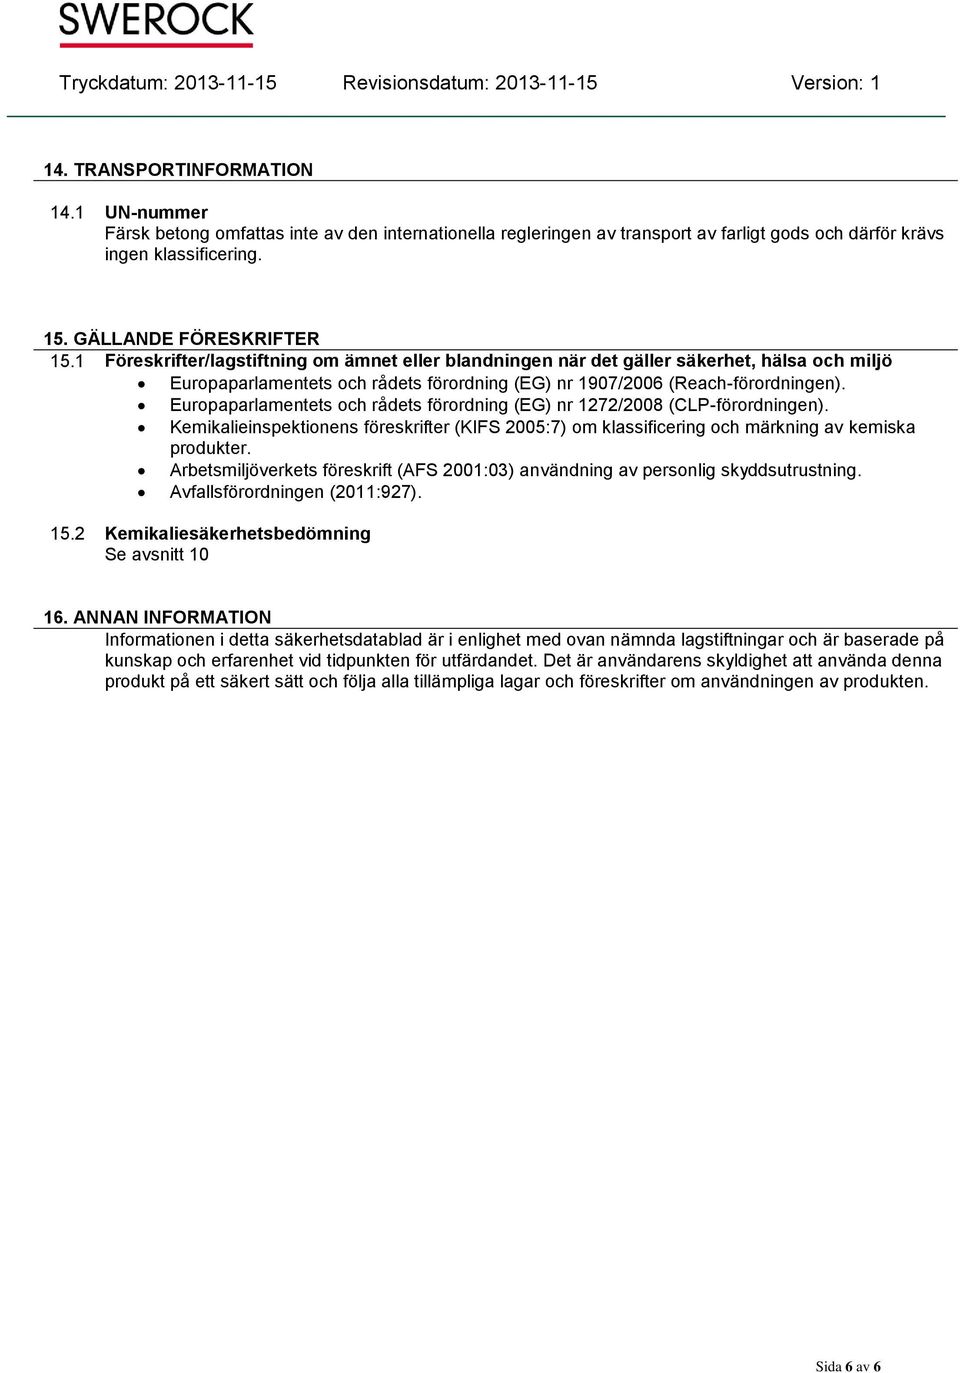 Europaparlamentets och rådets förordning (EG) nr 1272/2008 (CLP-förordningen). Kemikalieinspektionens föreskrifter (KIFS 2005:7) om klassificering och märkning av kemiska produkter.